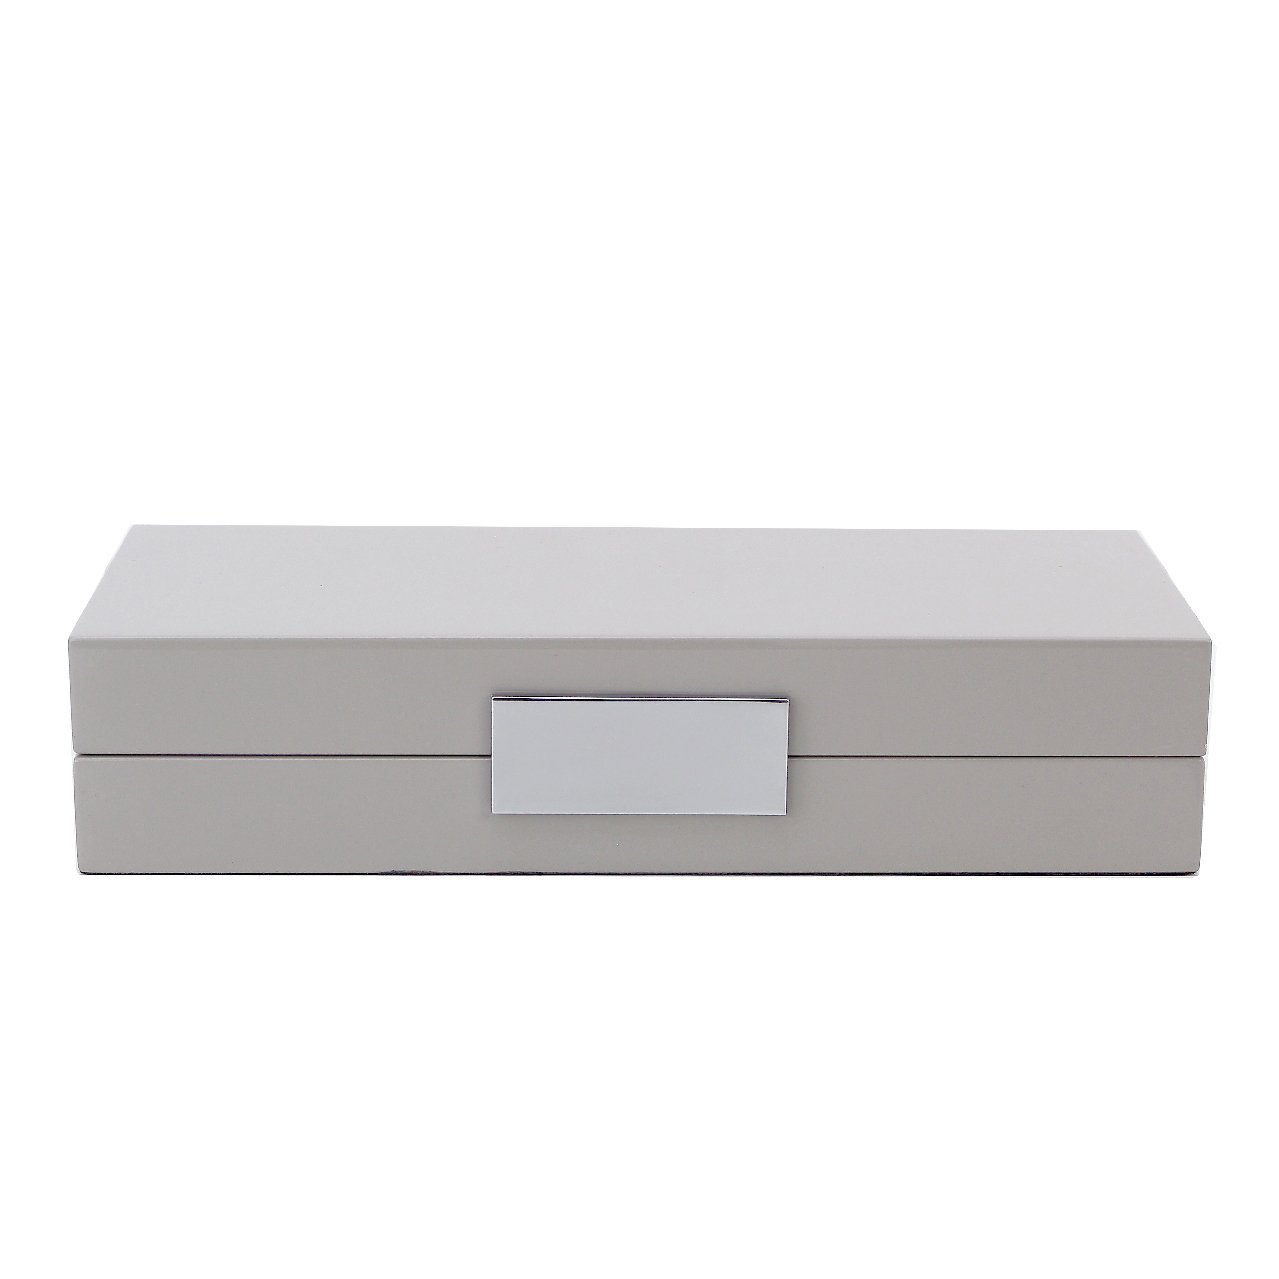 Chiffon Lacquer Box With Silver - Addison Ross Ltd UK